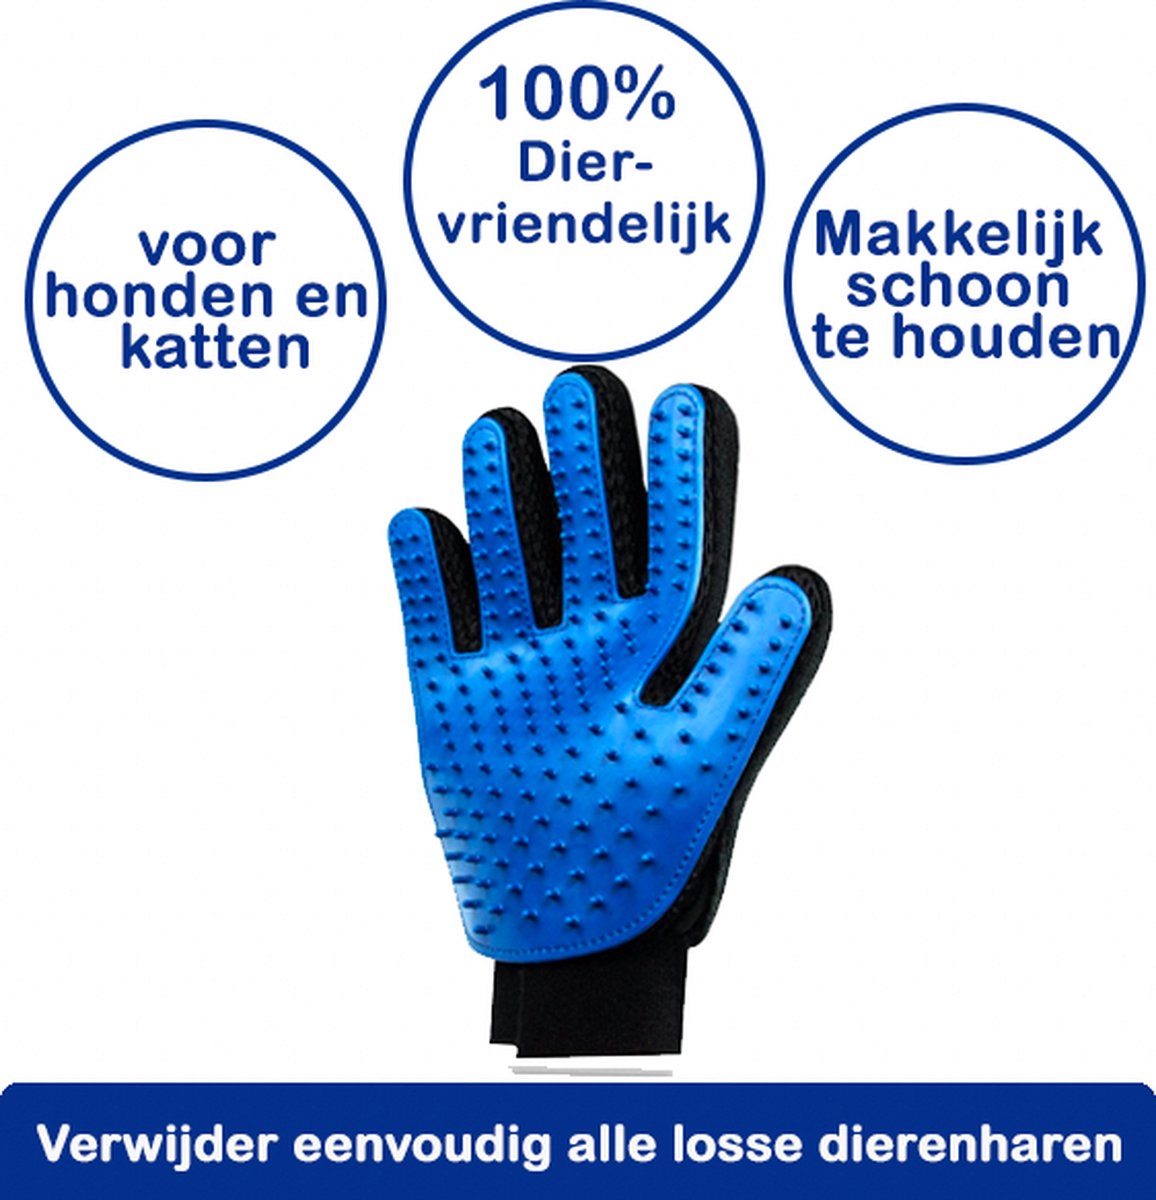 Vachthandschoen voor honden, katten, konijnen en andere huisdieren dierenhaarverwijderaar handschoenen, 100% diervriendelijk